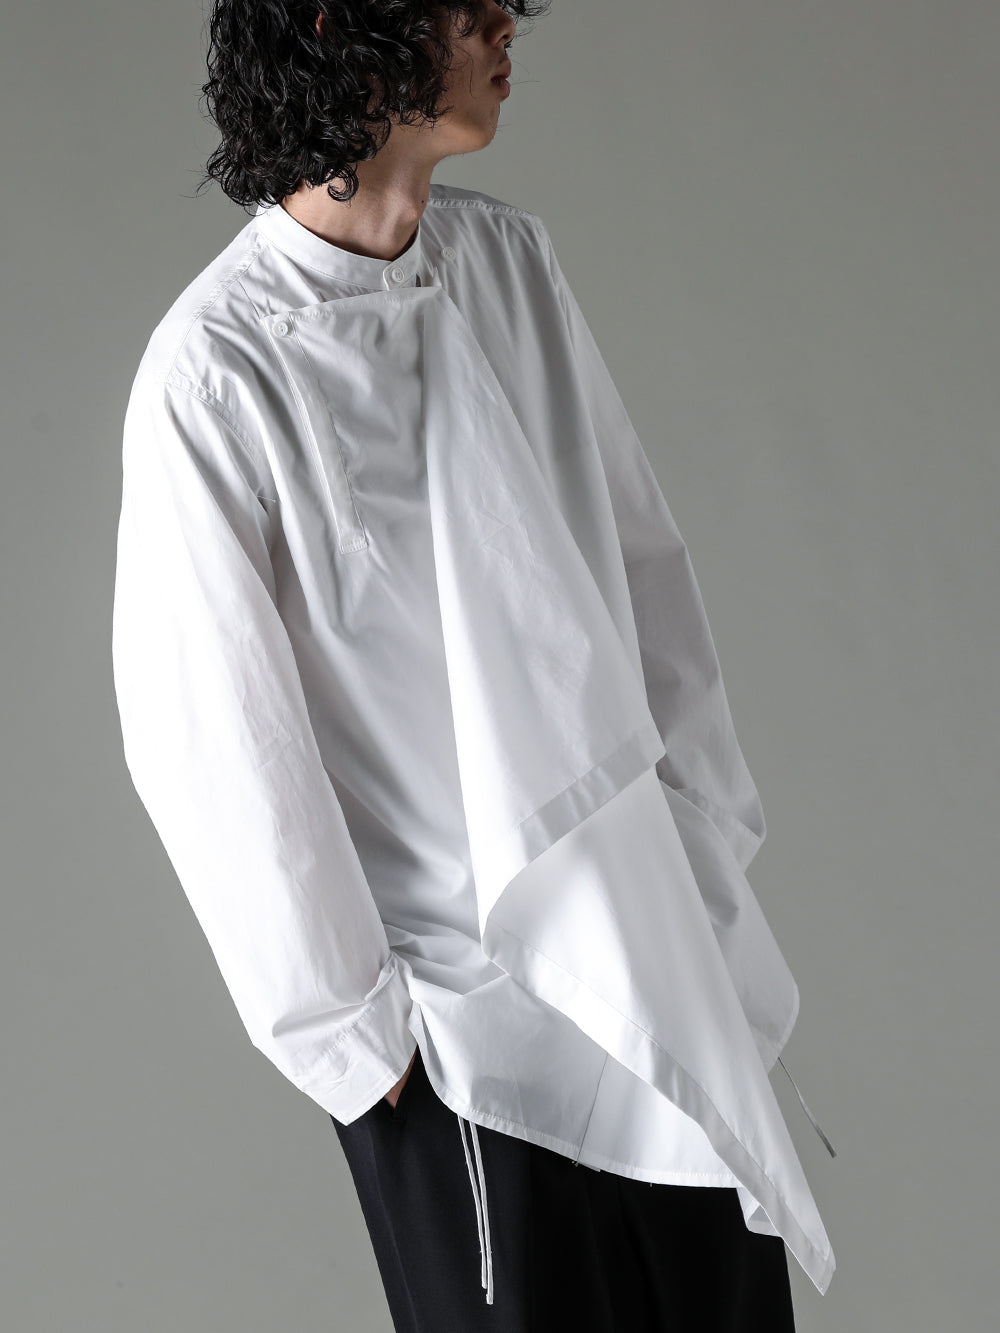 Yohji Yamamoto 23AW フロントドレープ環縫いブロードシャツ スタイル